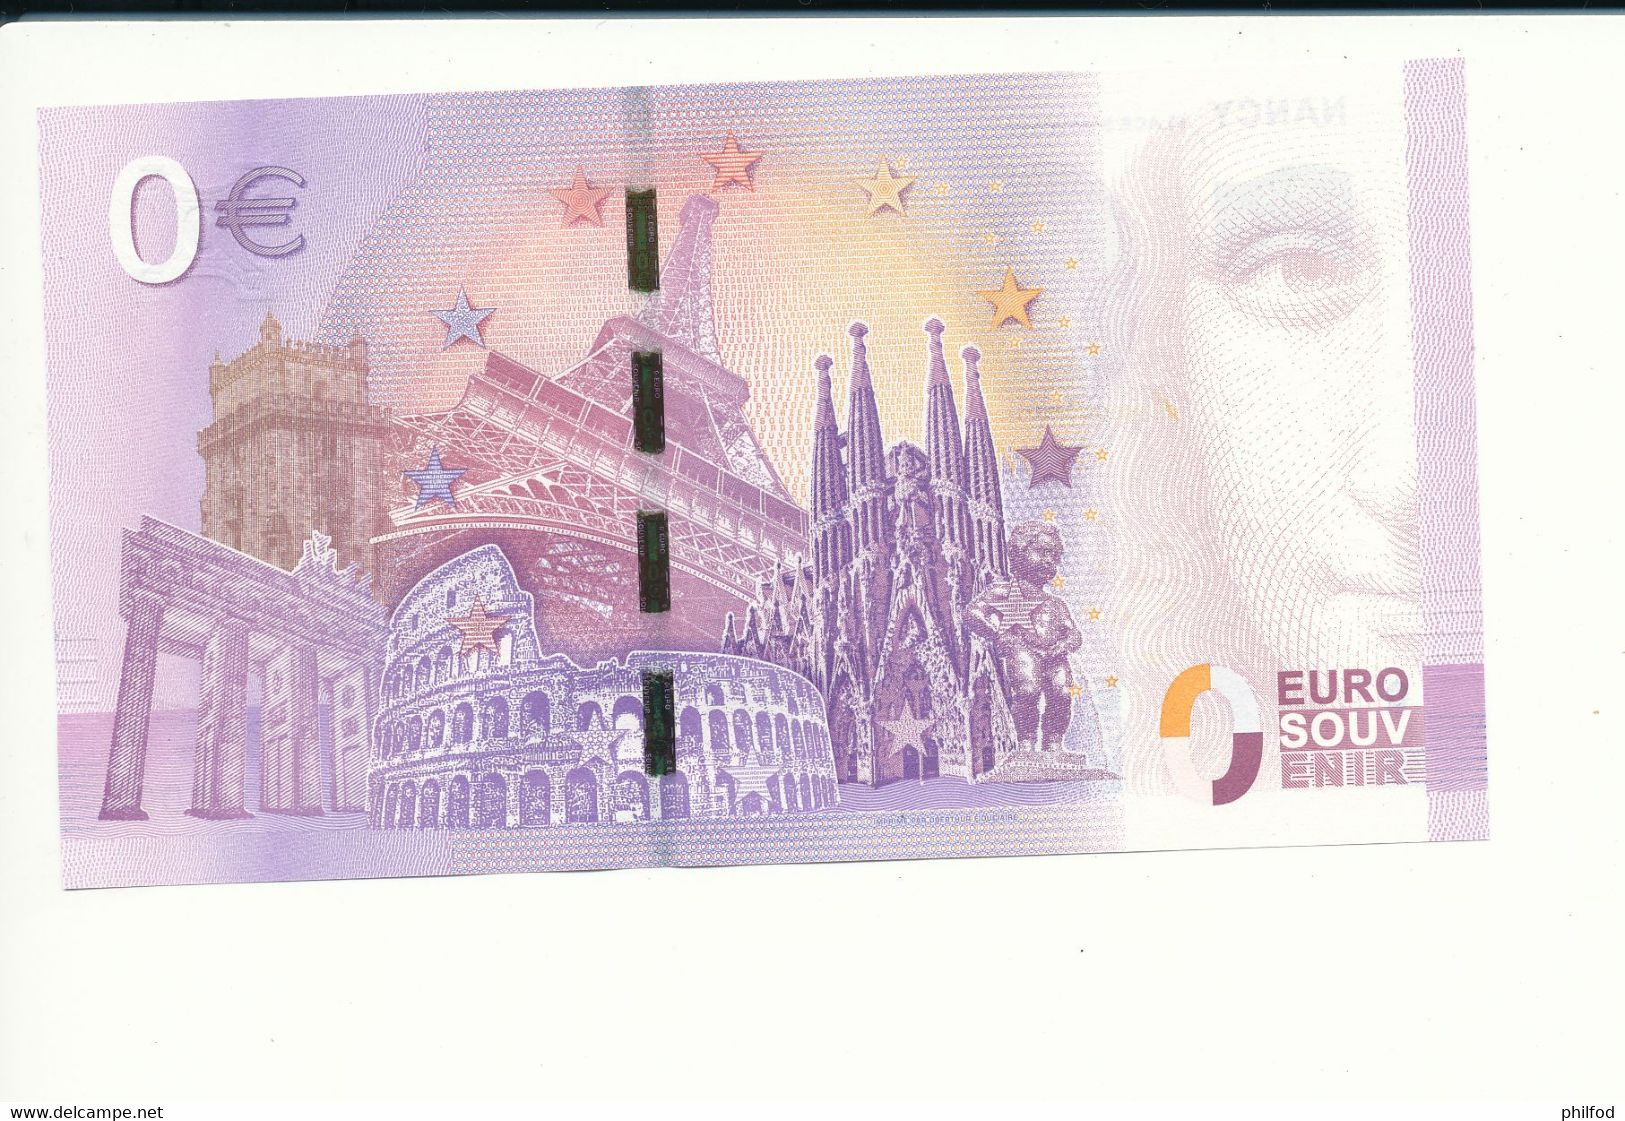 Billet Souvenir - 0 Euro - UEFA - 2017-2 - NANCY PLACE STANISLAS -  N° 2009 - Billet épuisé - Lots & Kiloware - Banknotes